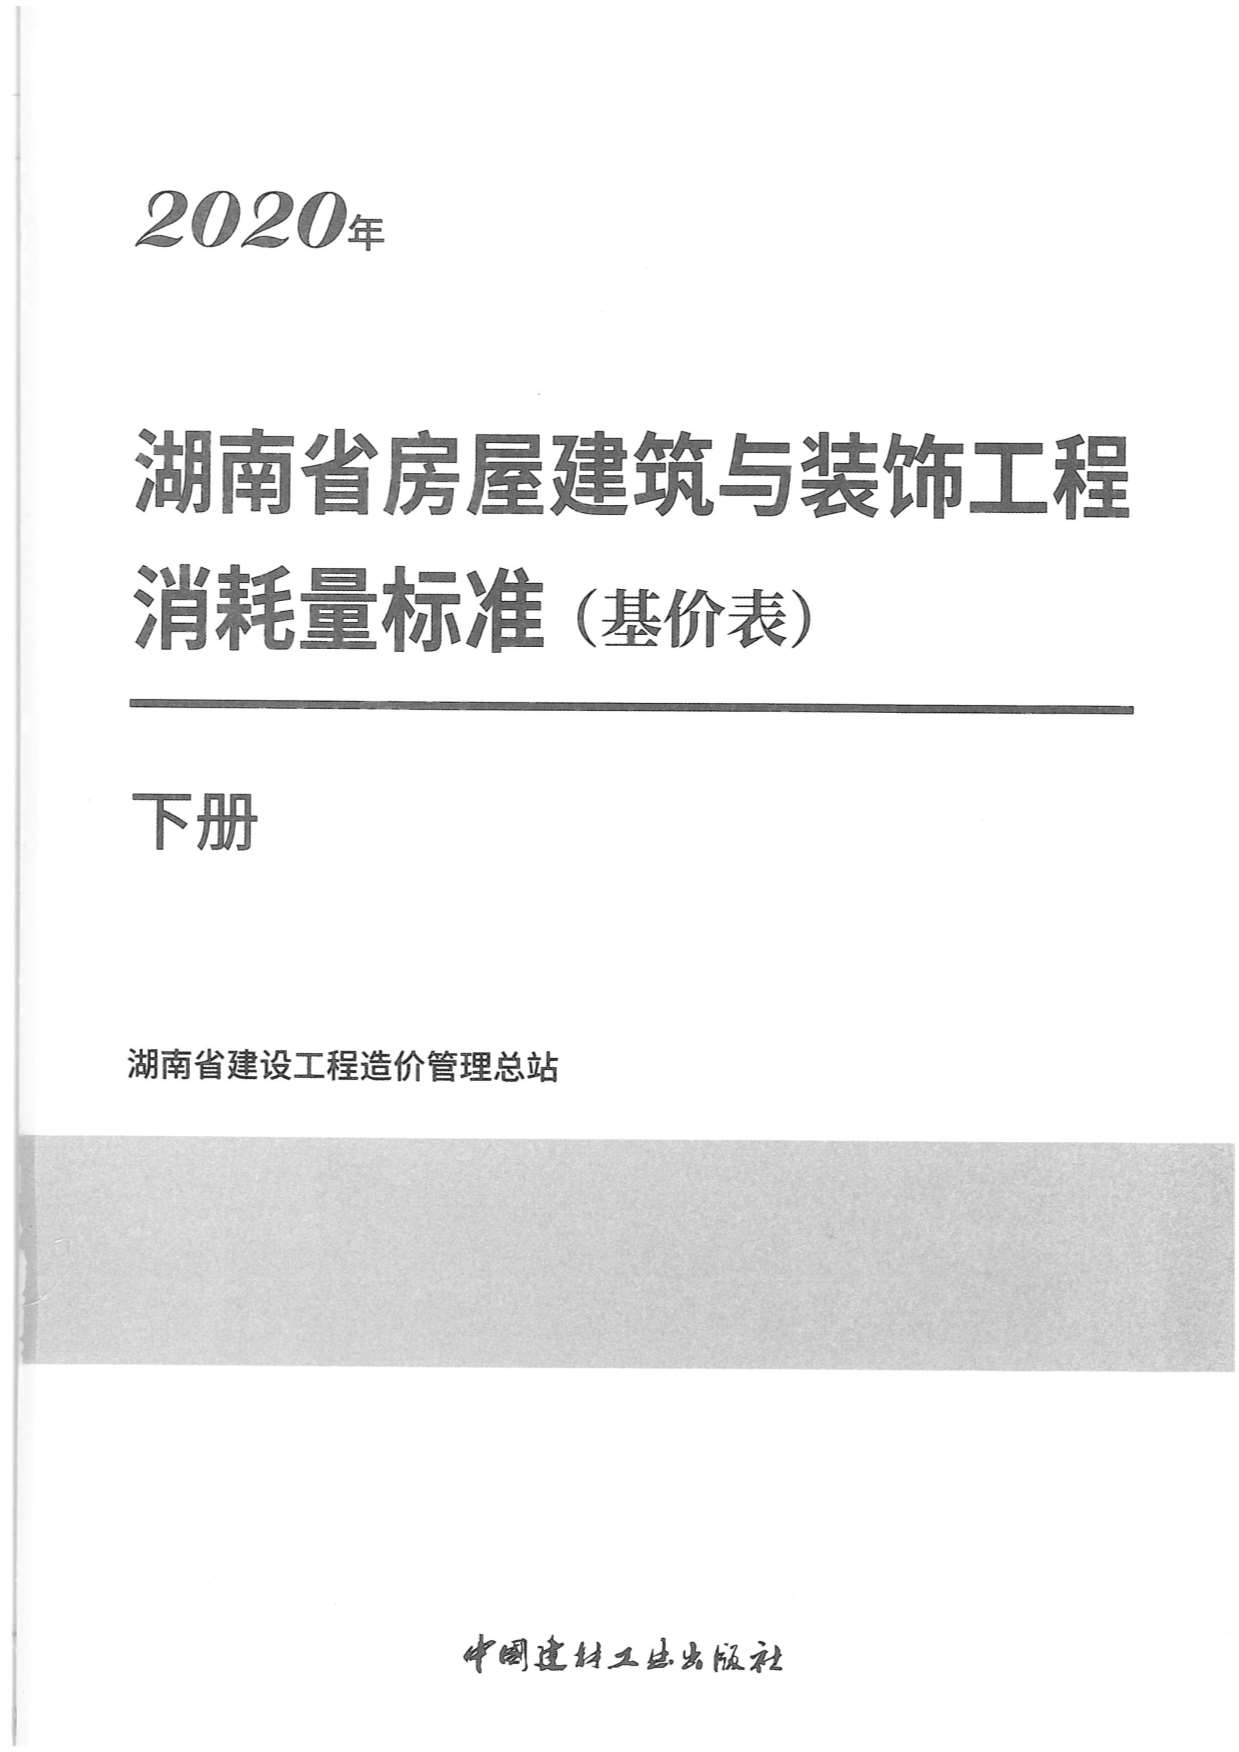 2020年湖南省房屋建筑与装饰工程消耗量标准（基价表）下册